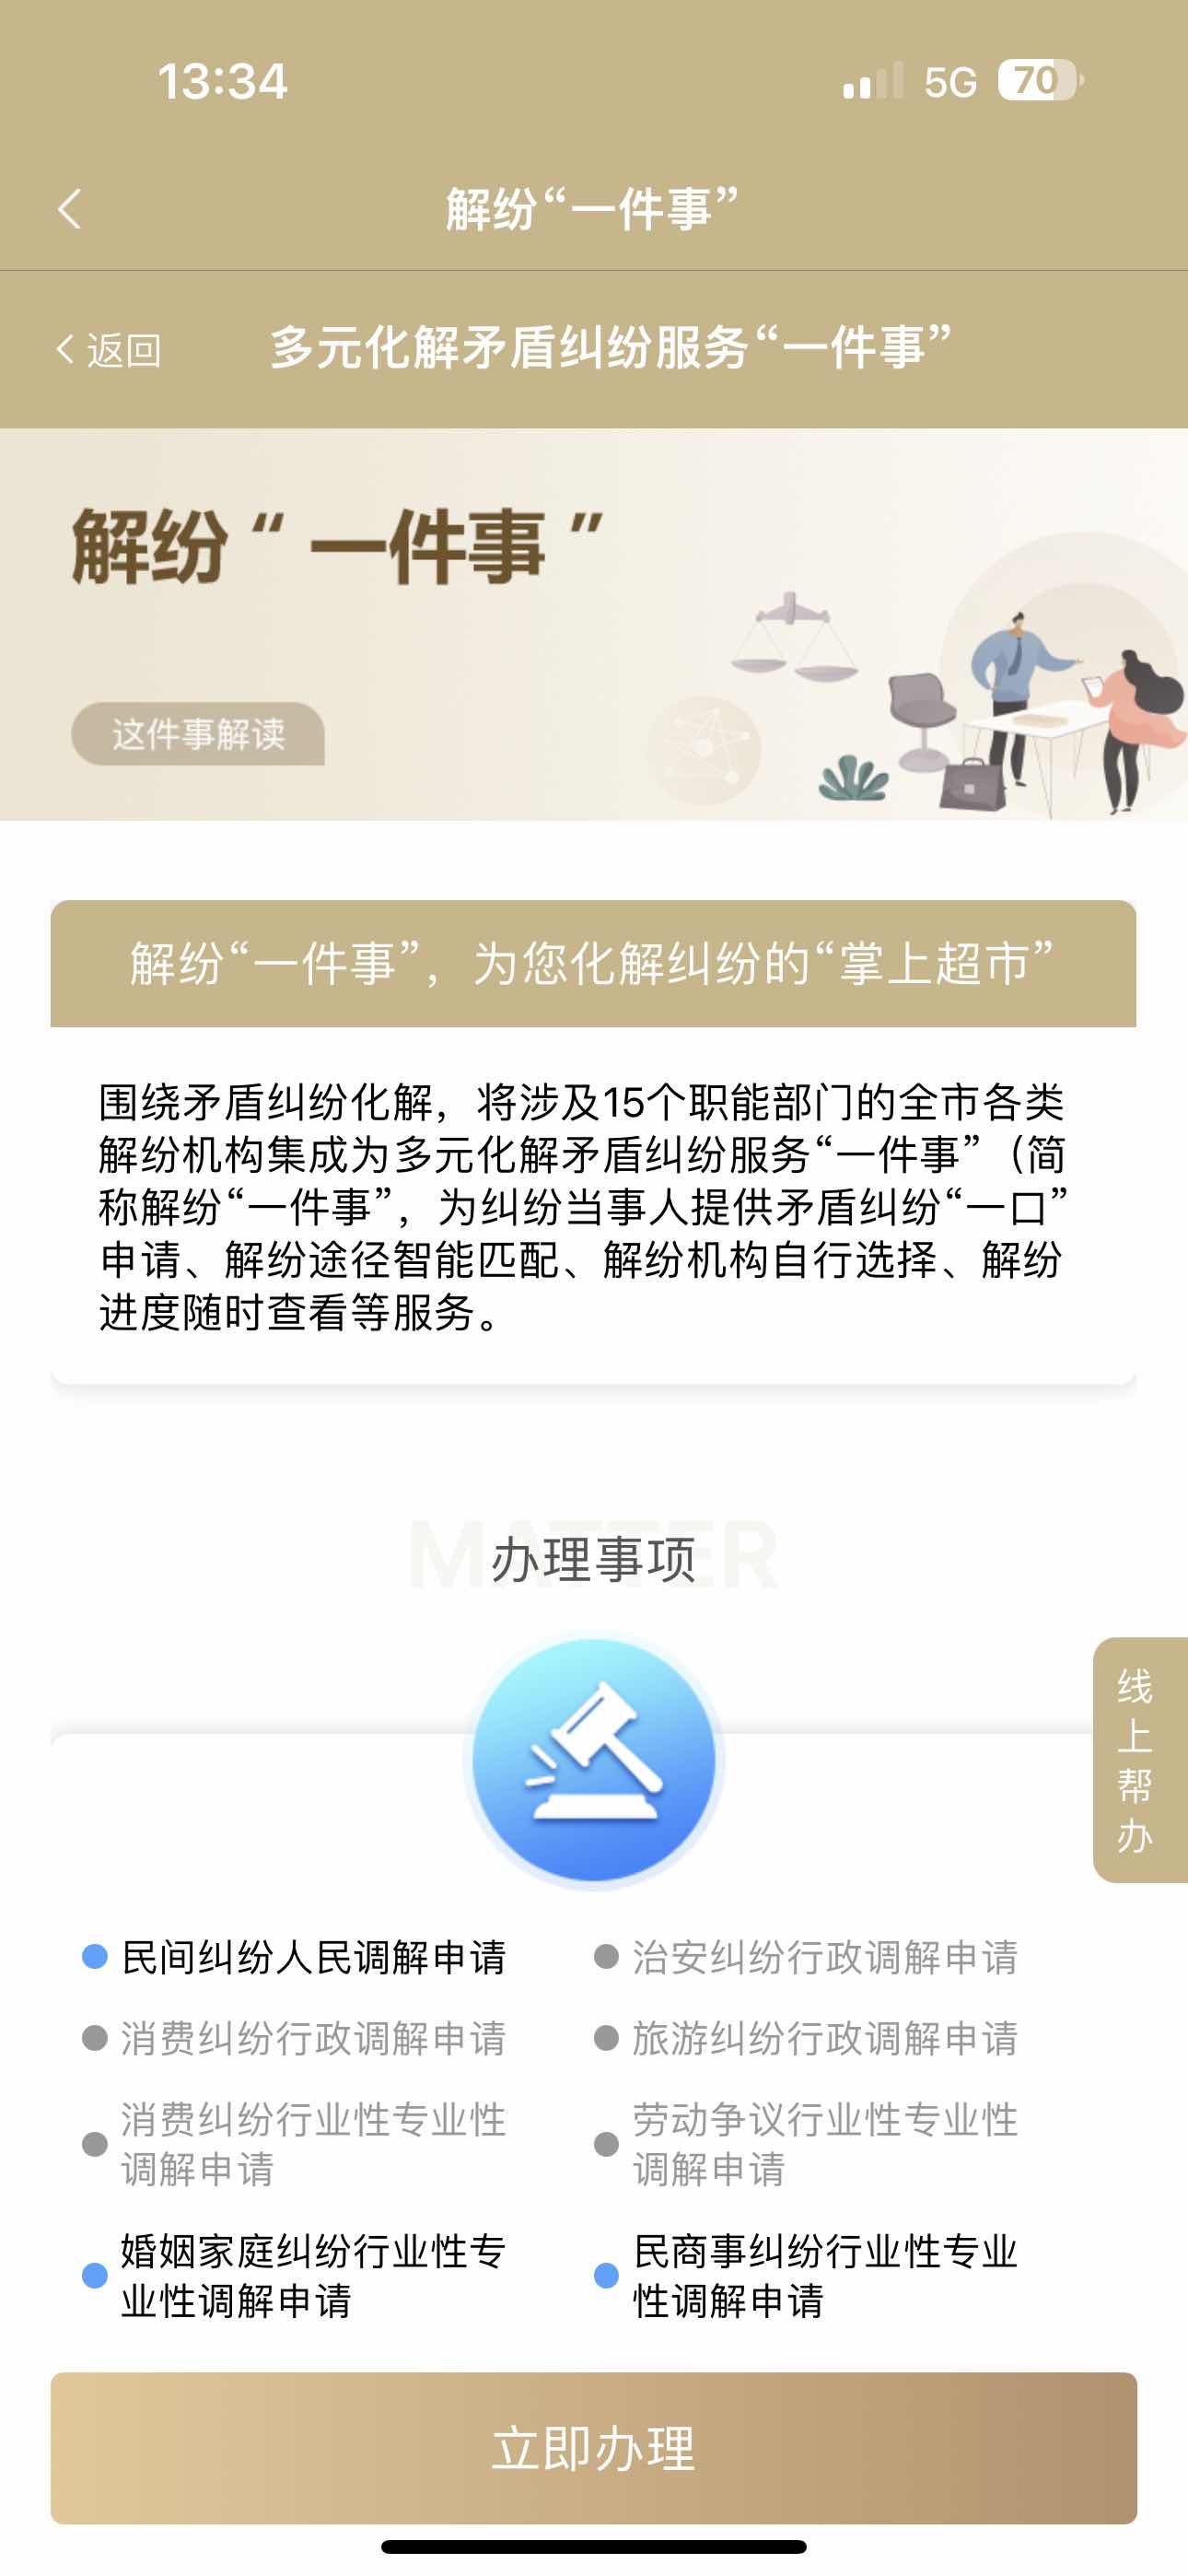 解紛“一件事”平台 上海市司法局供圖